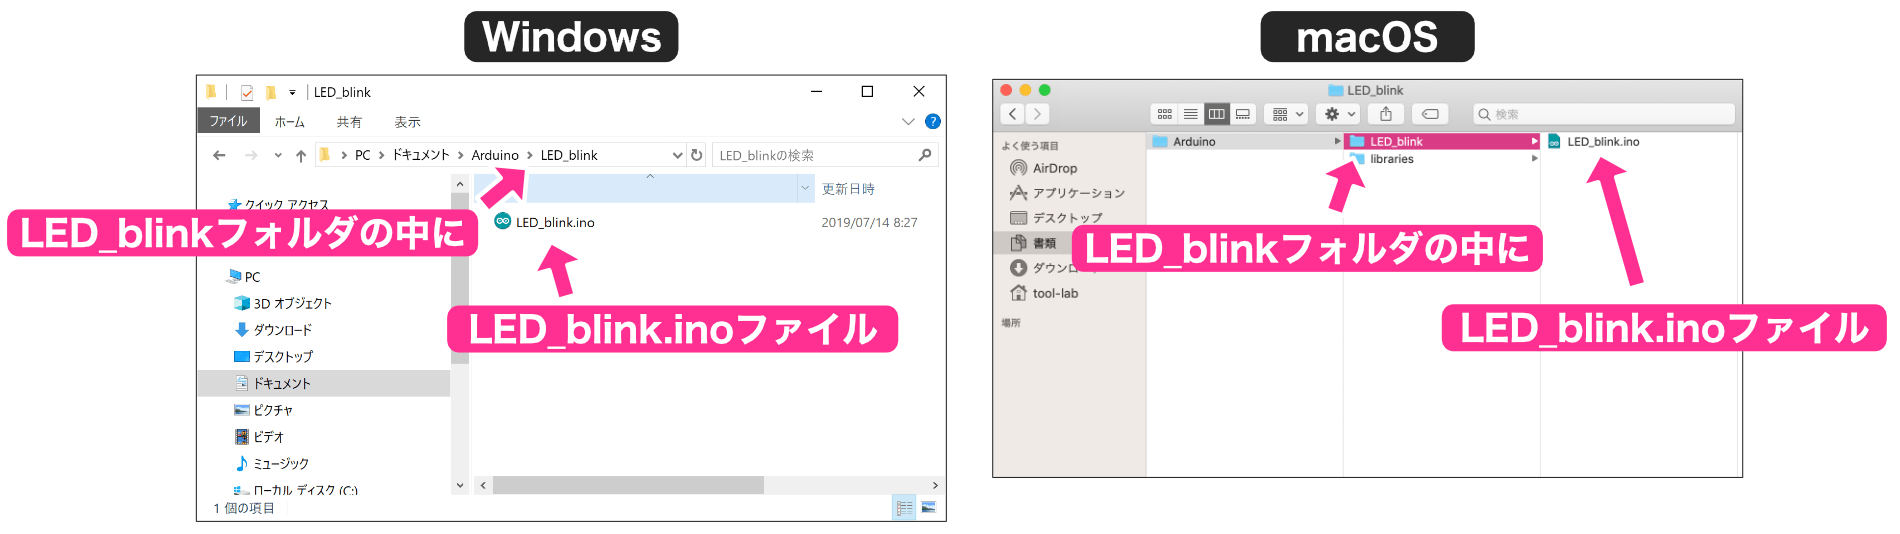 LED_blinkフォルダ